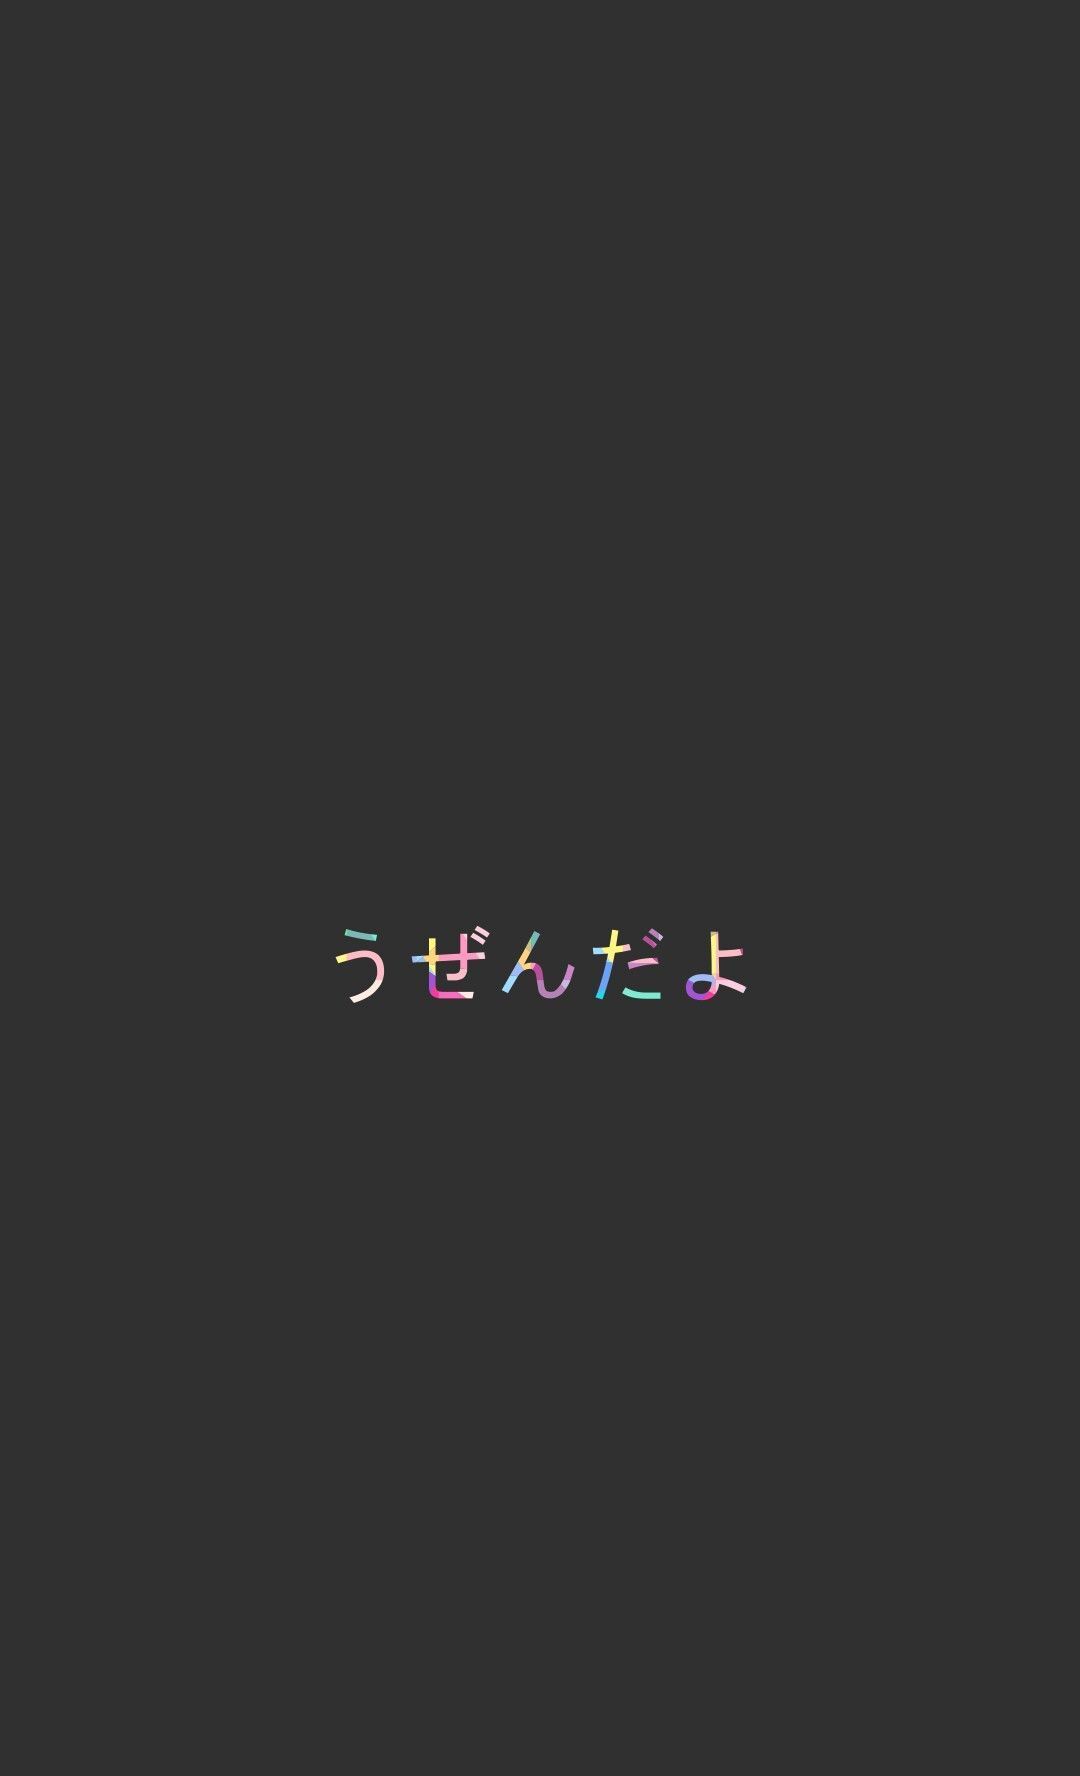 ✓[250+] うぜんだよ (f*ck off).. minimalist wallpaper iphone Japanese - Android /  iPhone HD Wallpaper Background Download (png / jpg) (2023)